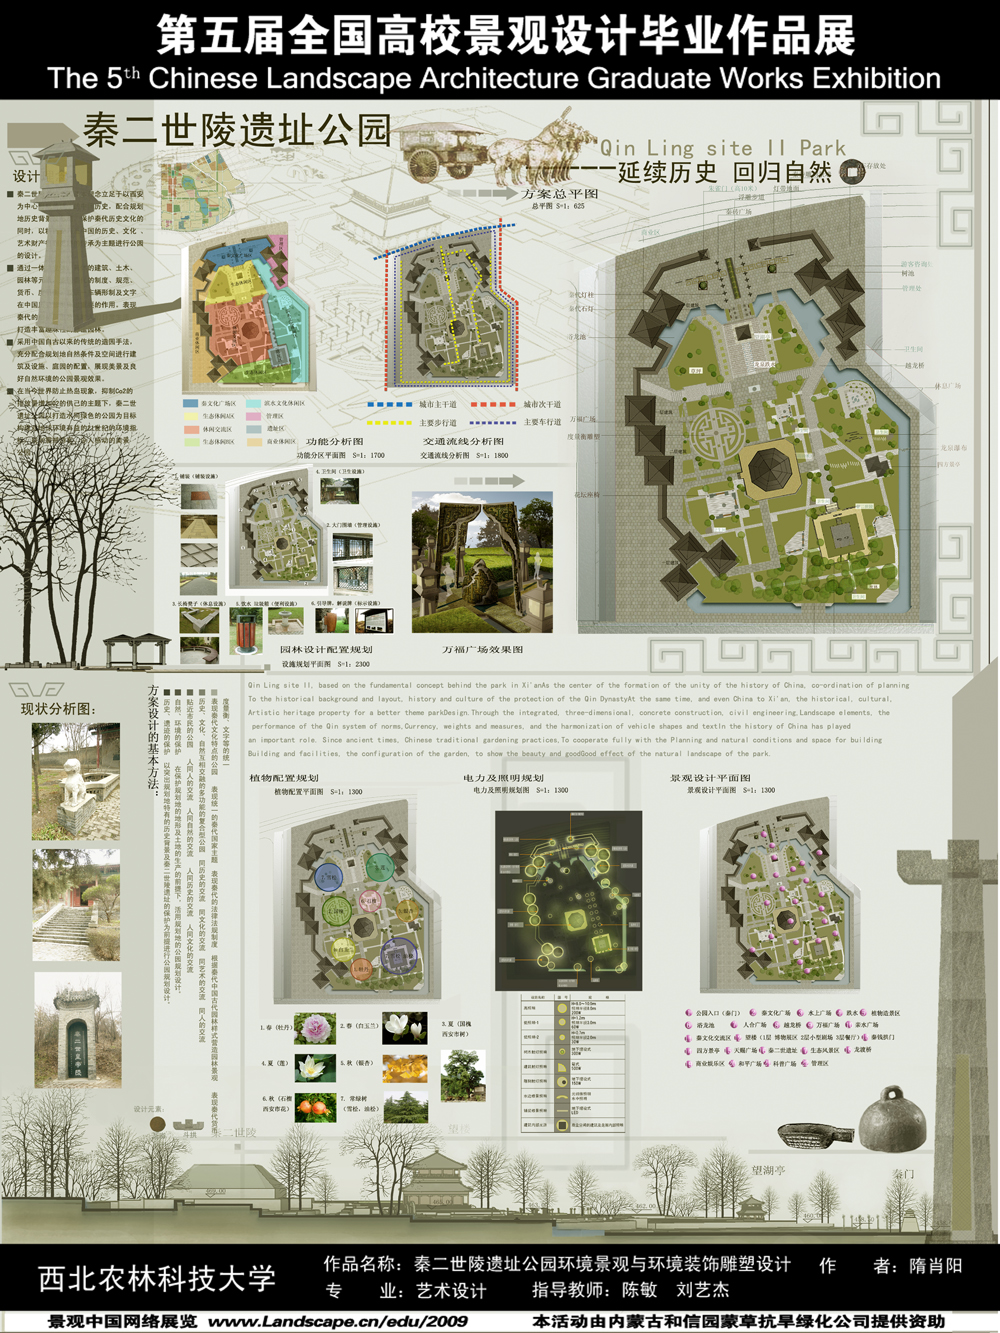 秦二世陵遗址公园环境景观与环境装饰雕塑设计-2